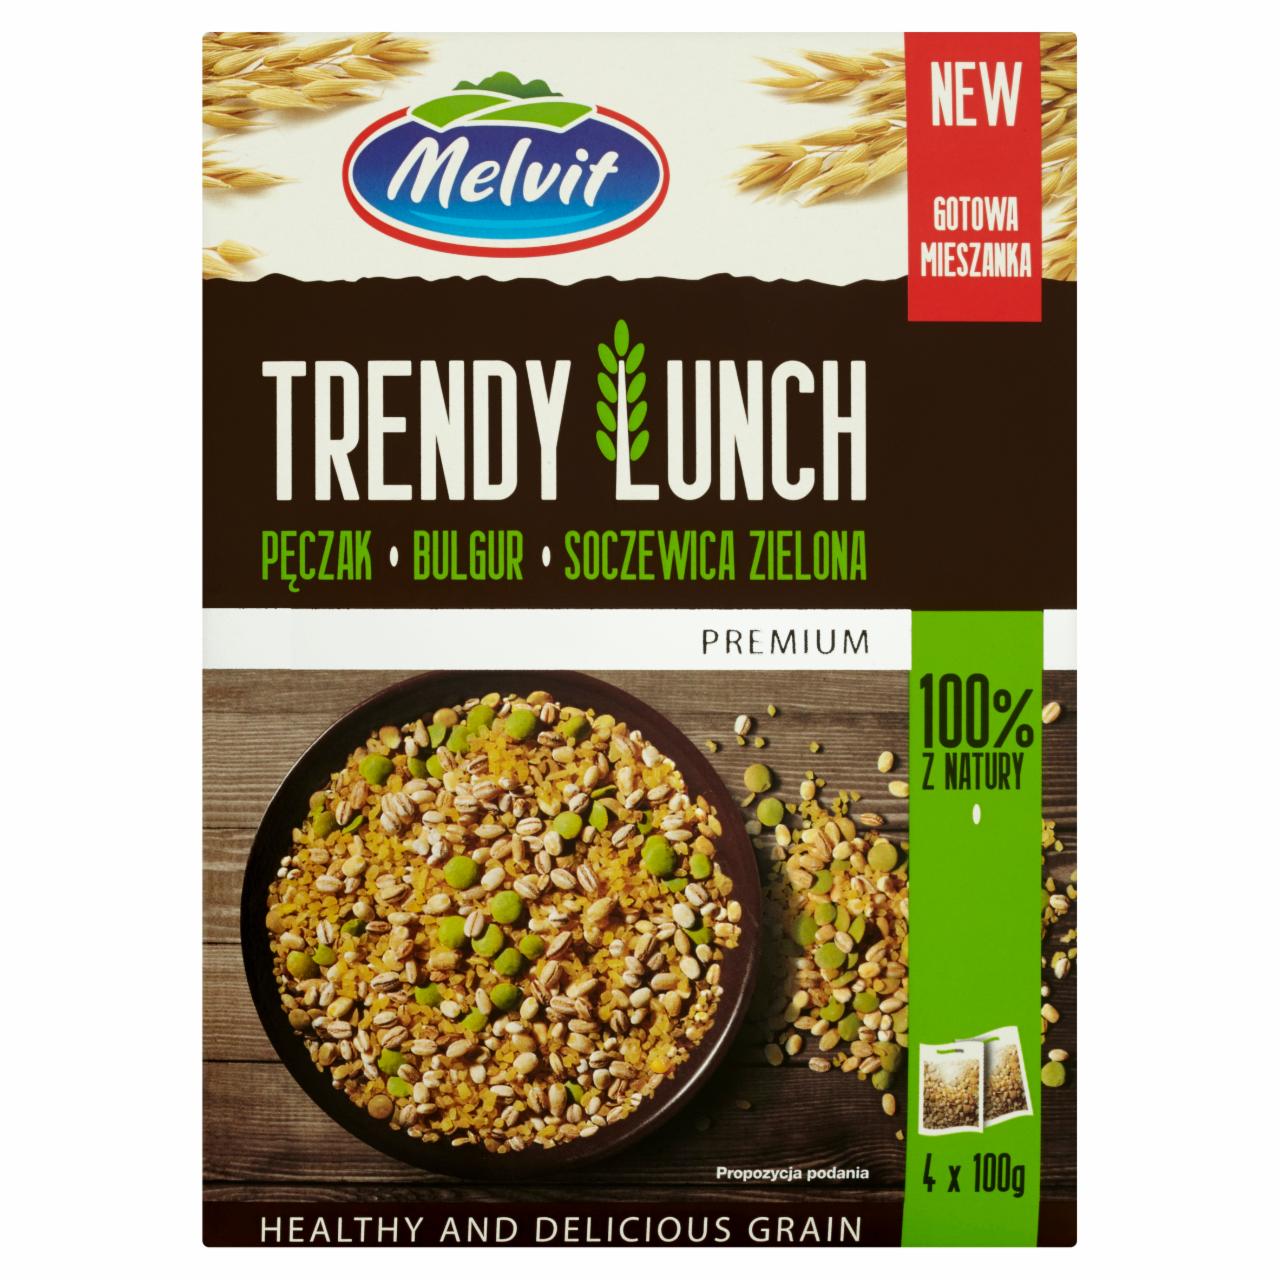 Zdjęcia - Trendy lunch Premium pęczak bulgur soczewica zielona Melvit